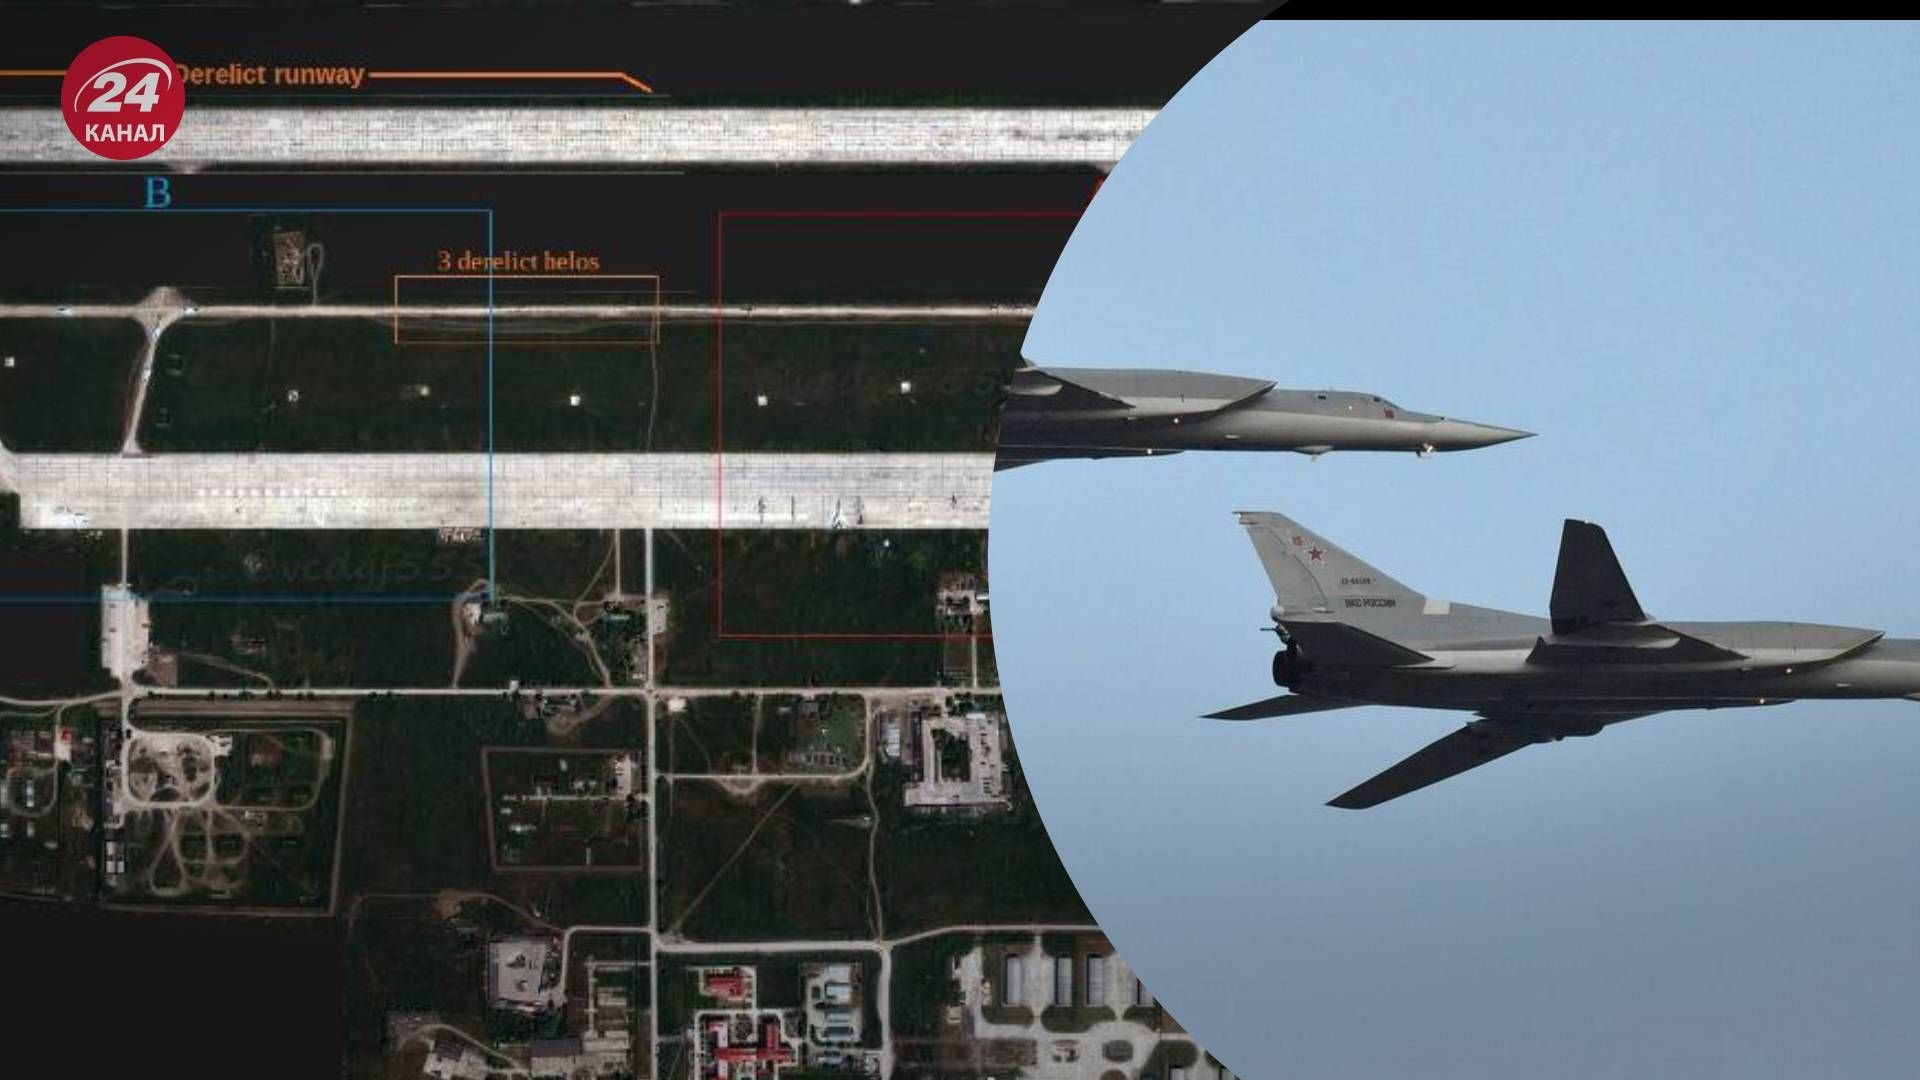 Спутниковые снимки показали количество бомбардировщиков на российском аэродроме Моздок - 24 Канал